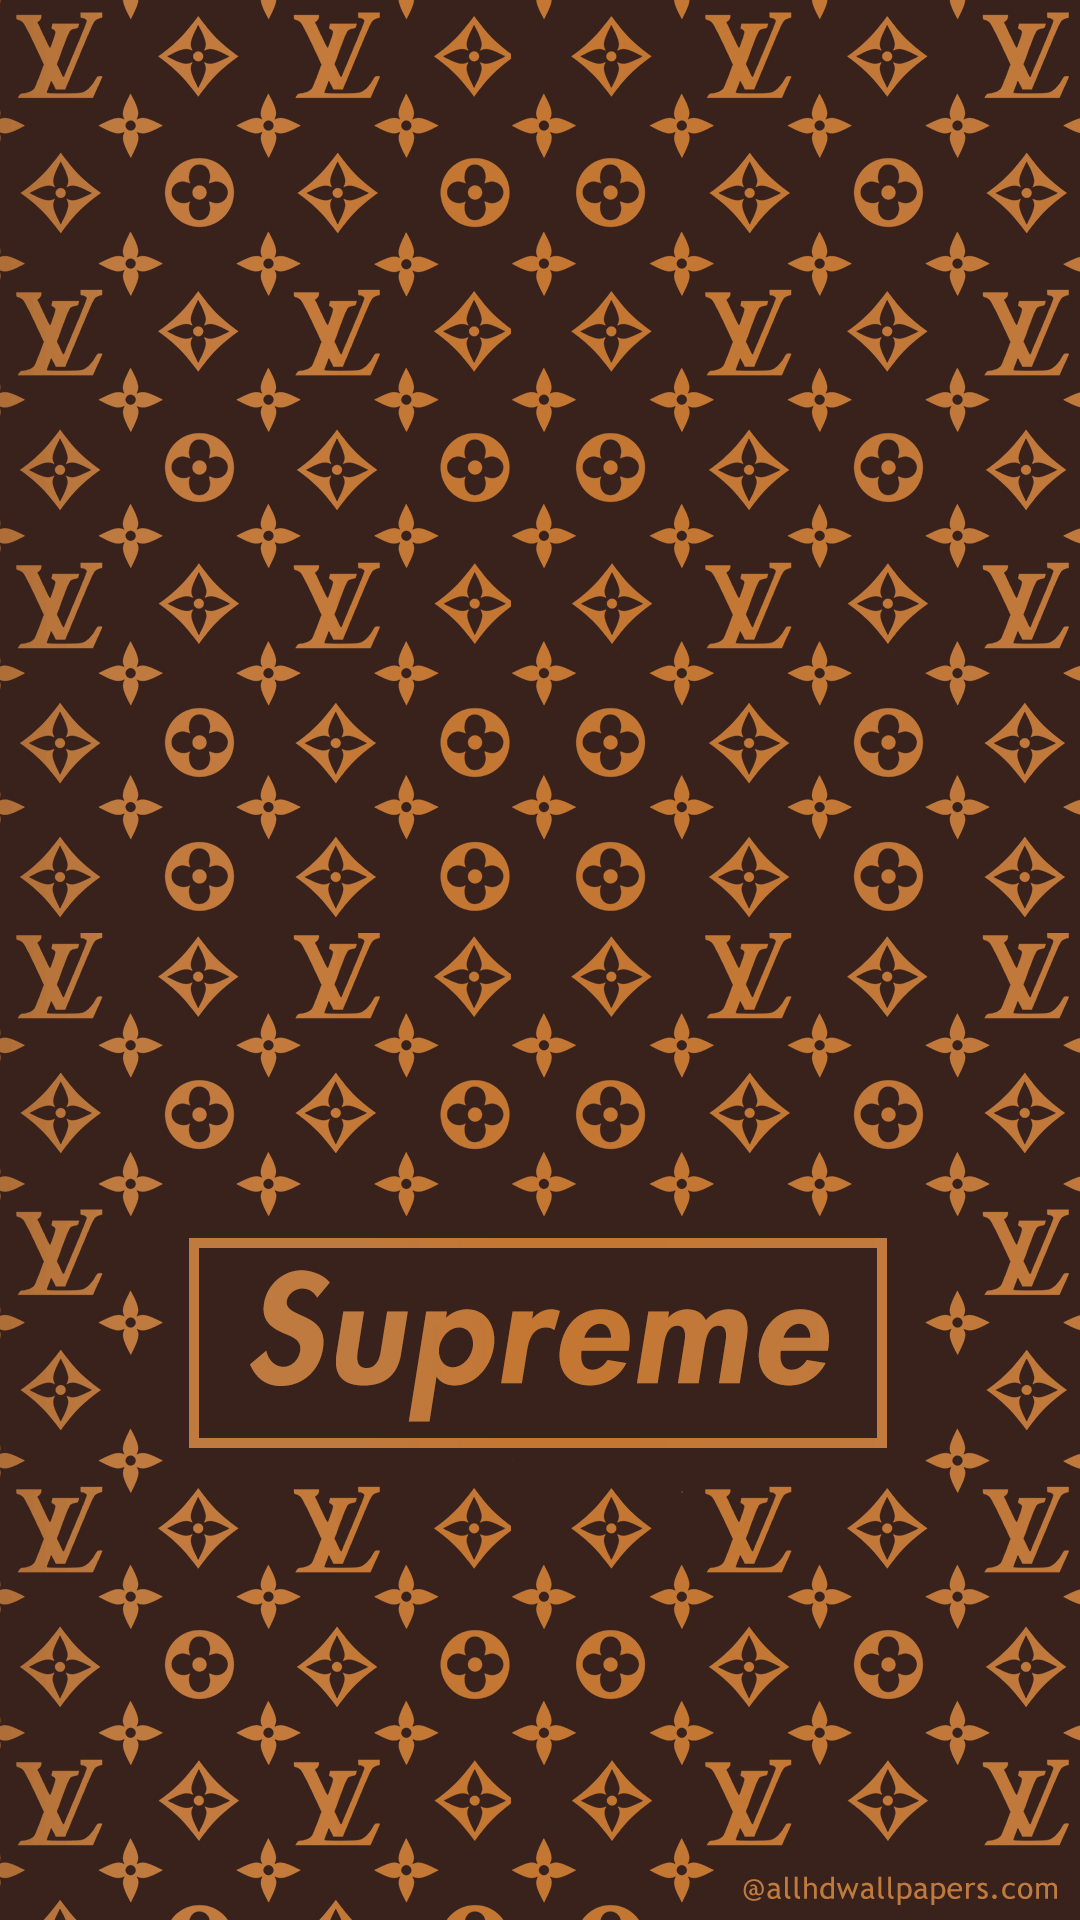 Supreme LV Wallpaper 1284 x 2778 in 2023